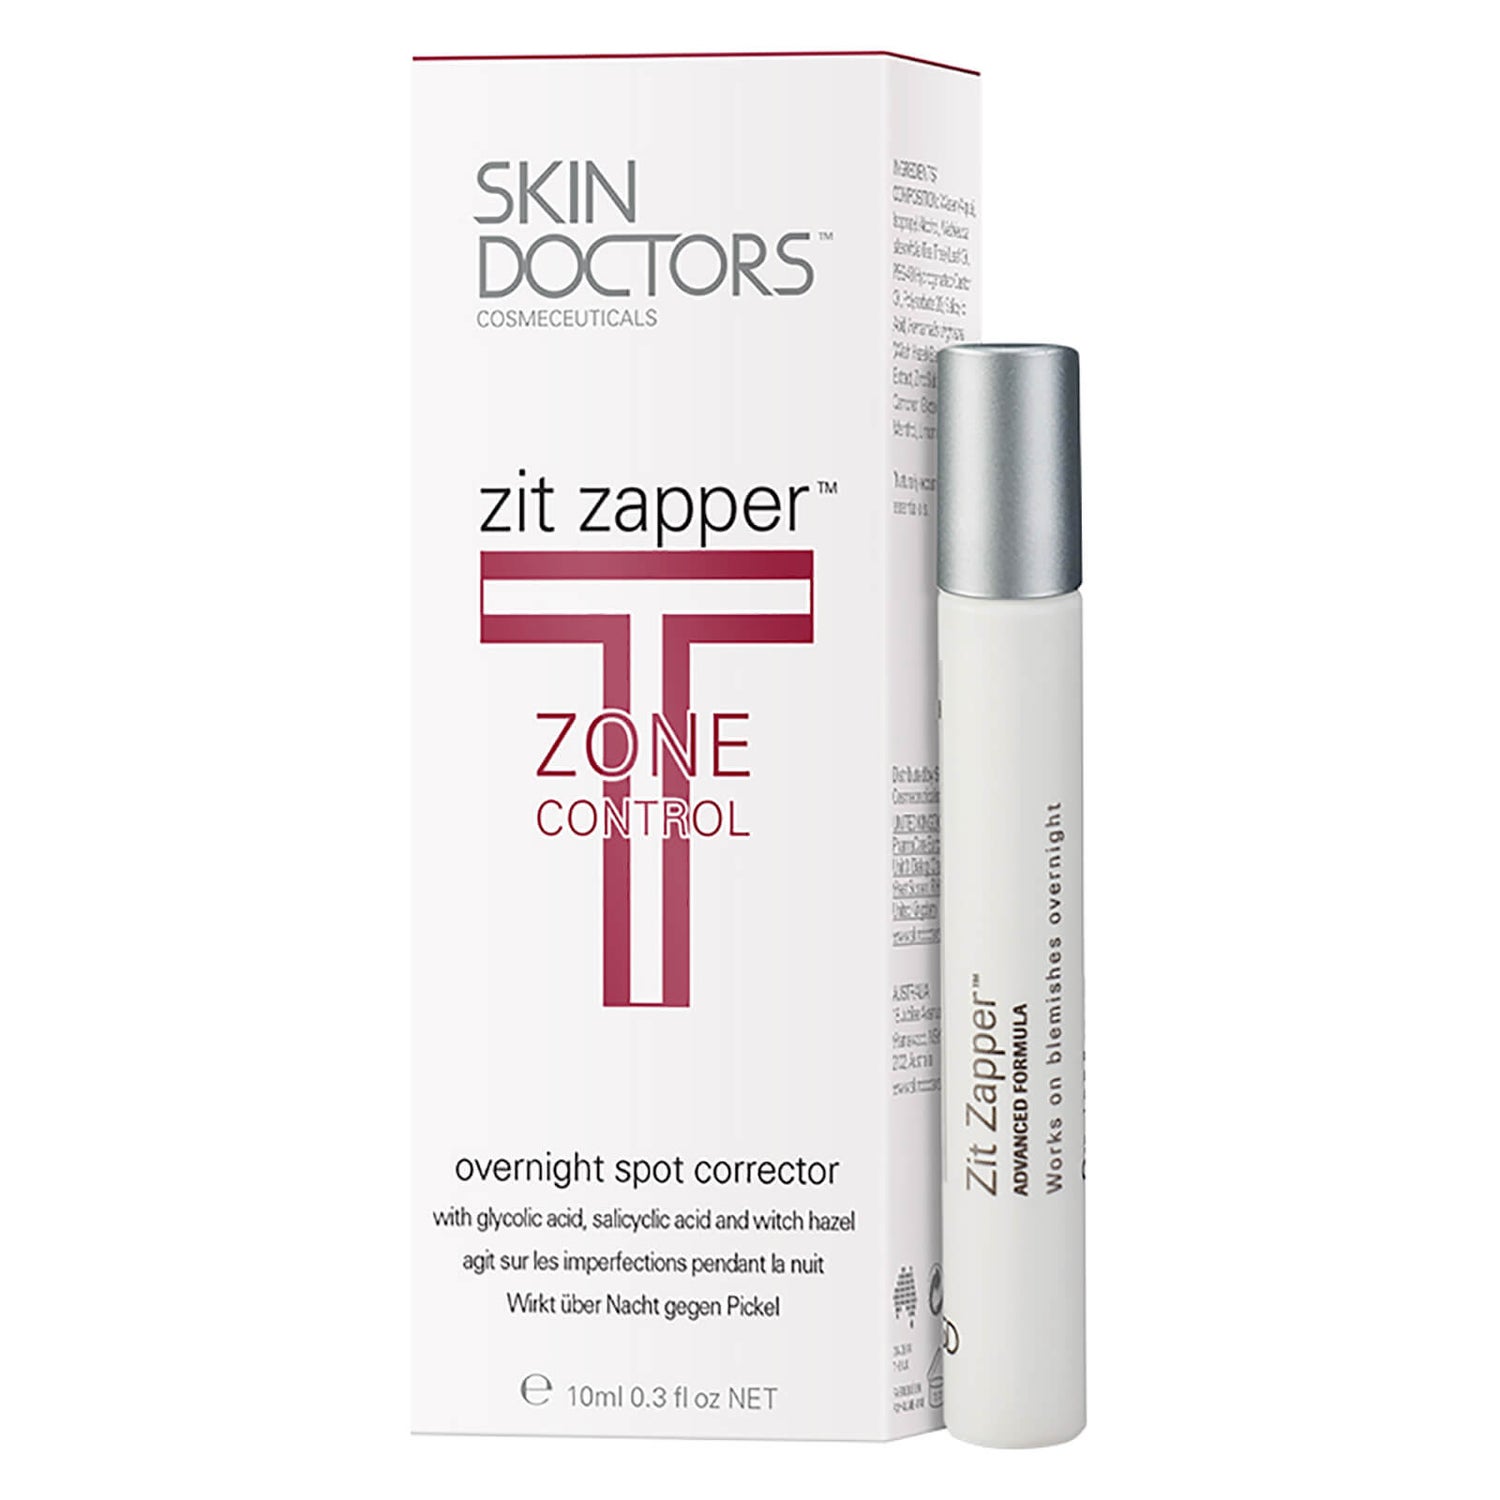 Skin Doctors Zit Zapper (10 ml)